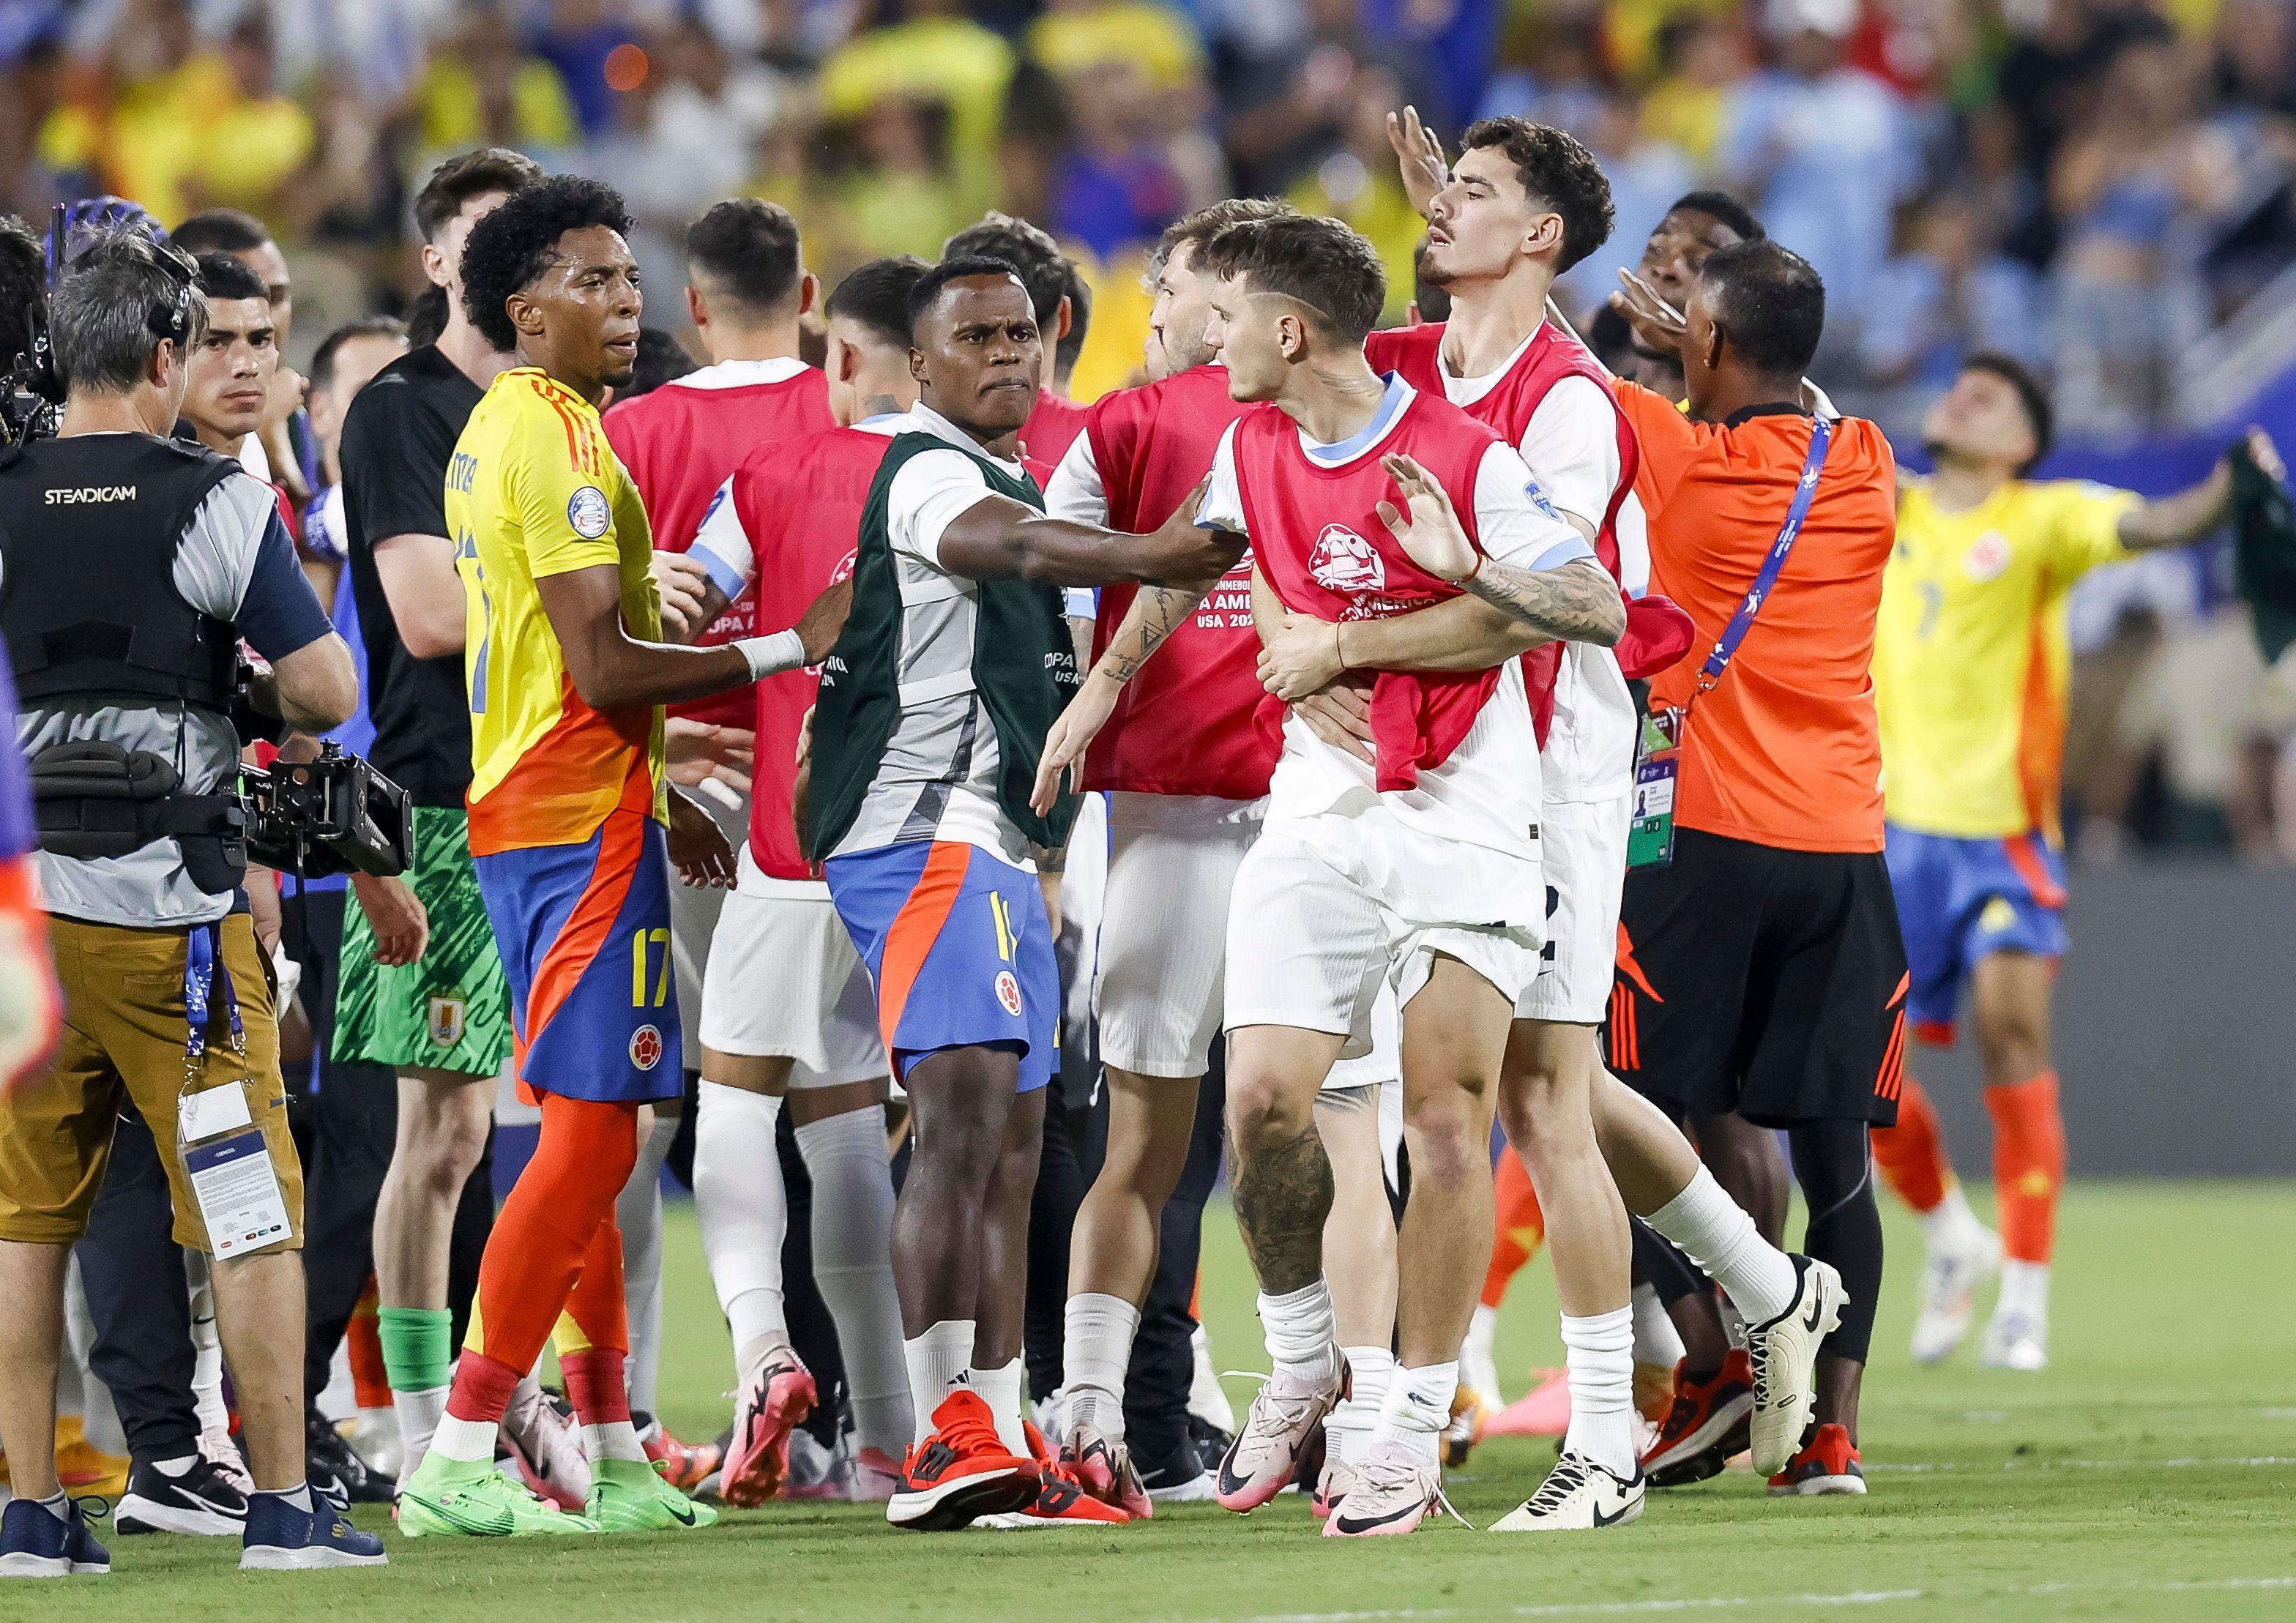 Jugadores uruguayos y colombianos son separados en la cancha tras el final del partido